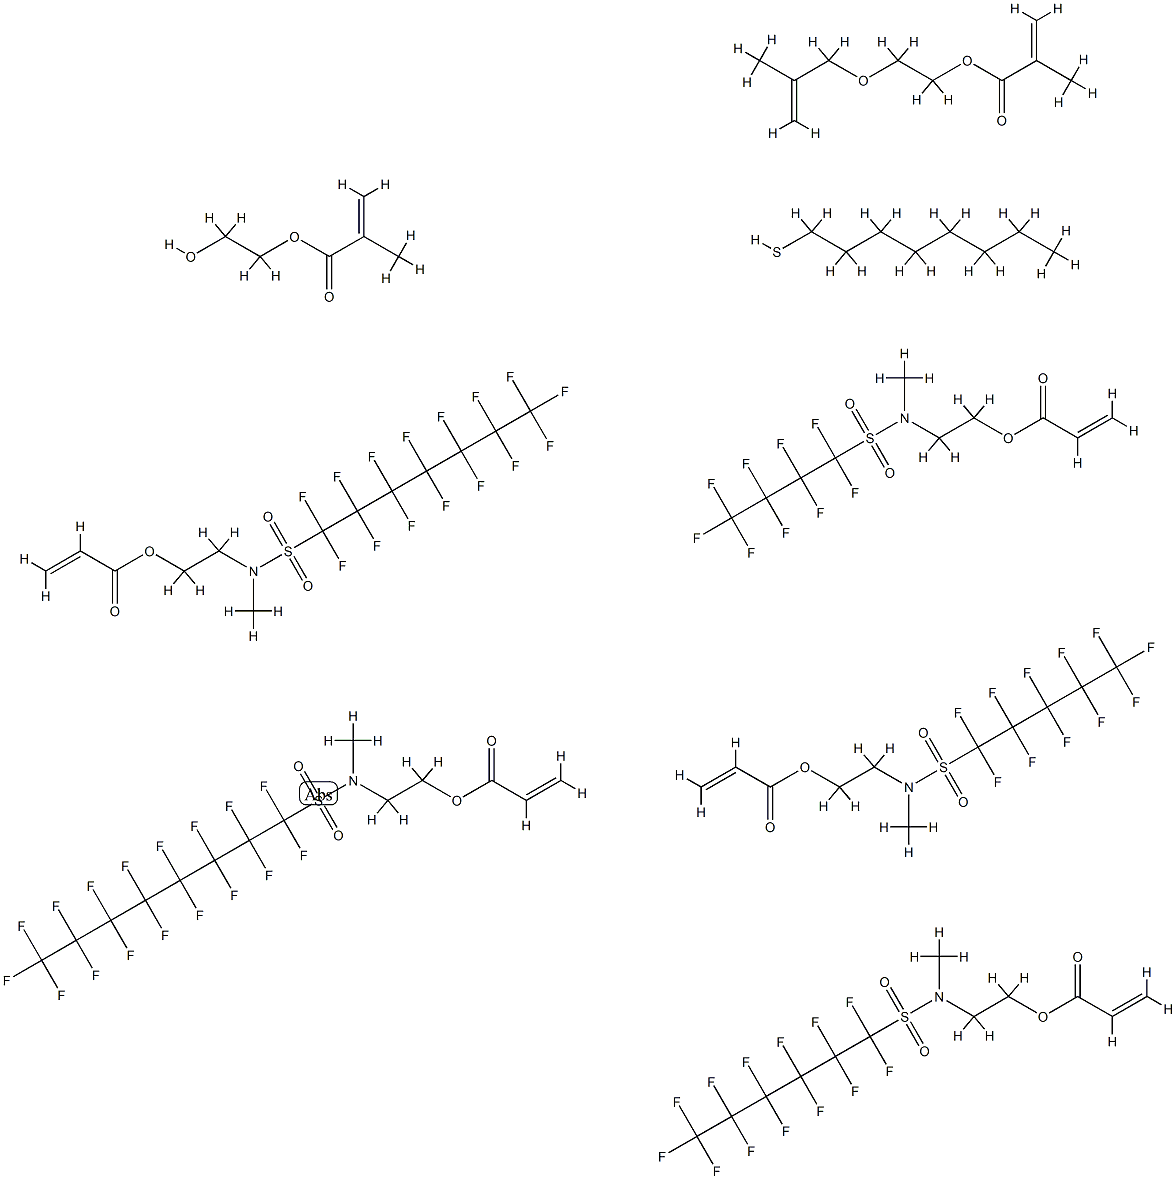 2-Propenoic acid, 2-[[(heptadecafluorooctyl) sulfonyl]methylamino]ethyl ester, telomer with 2-[methyl[(nonafluorobutyl)sulfonyl]amino]ethyl 2-propenoate, α-(2-methyl-1-oxo-2- propenyl)-ω-hydroxypoly(oxy-1,2-ethanediyl ), α-(2-methyl-1-oxo-2-propenyl)-ω-[(|